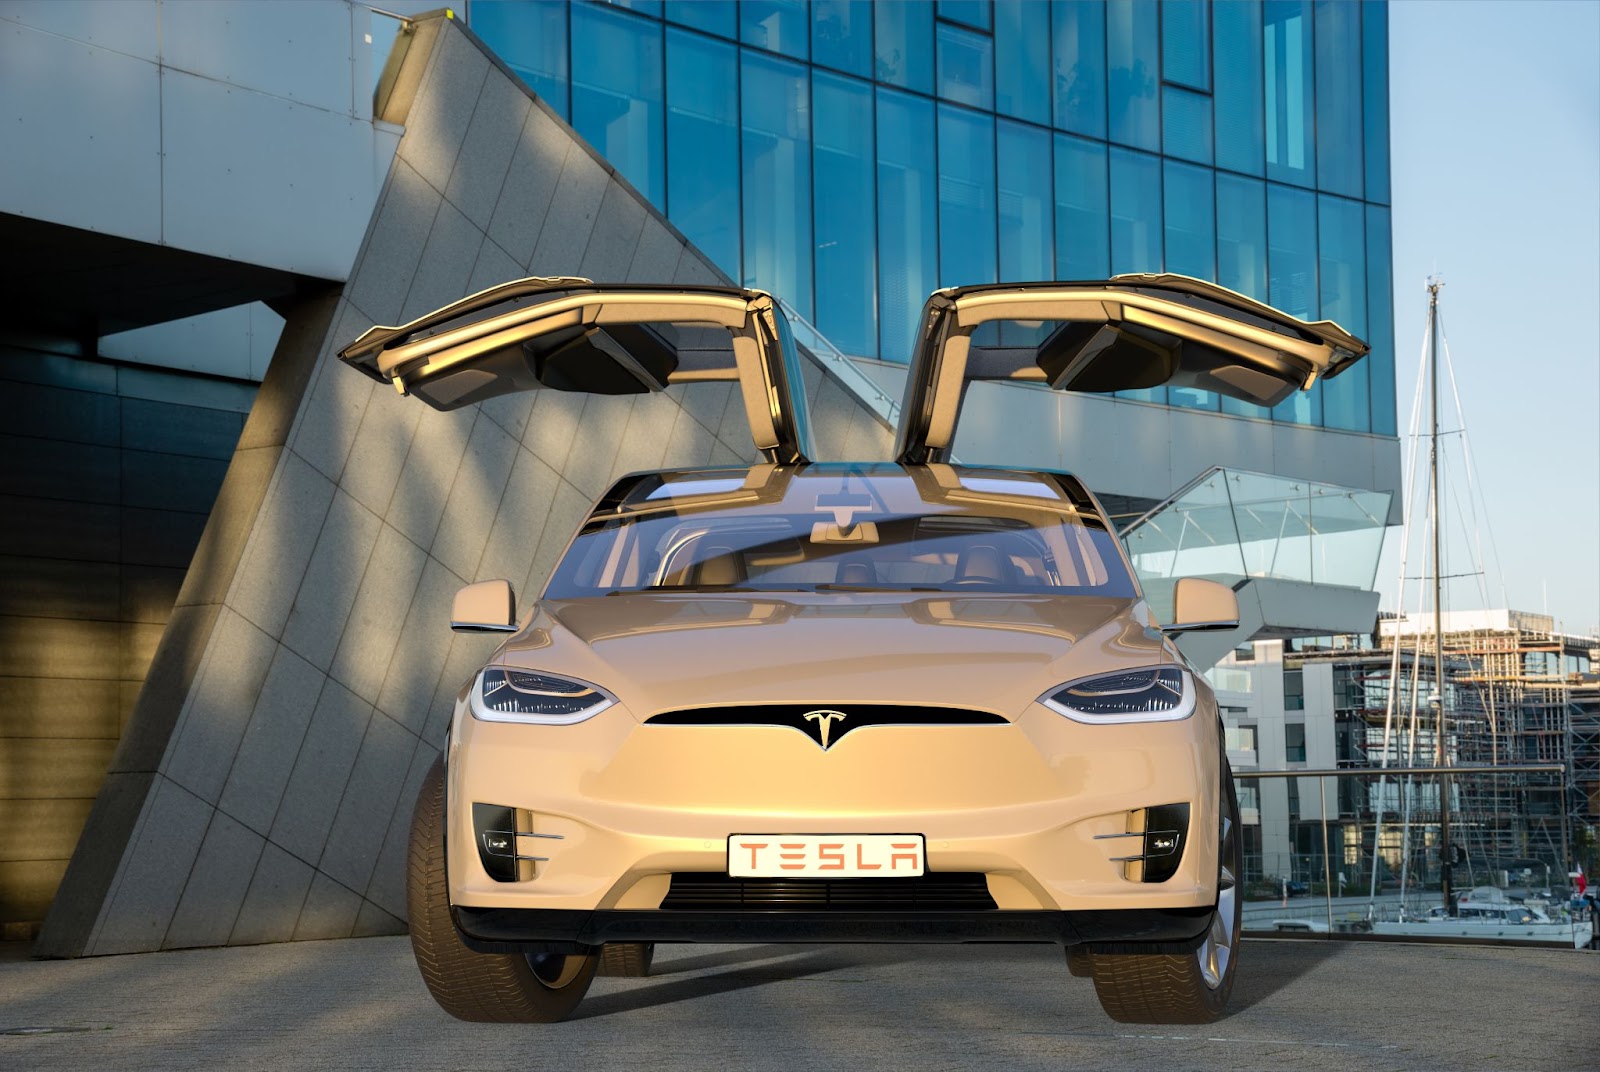 Tesla model x with open doors